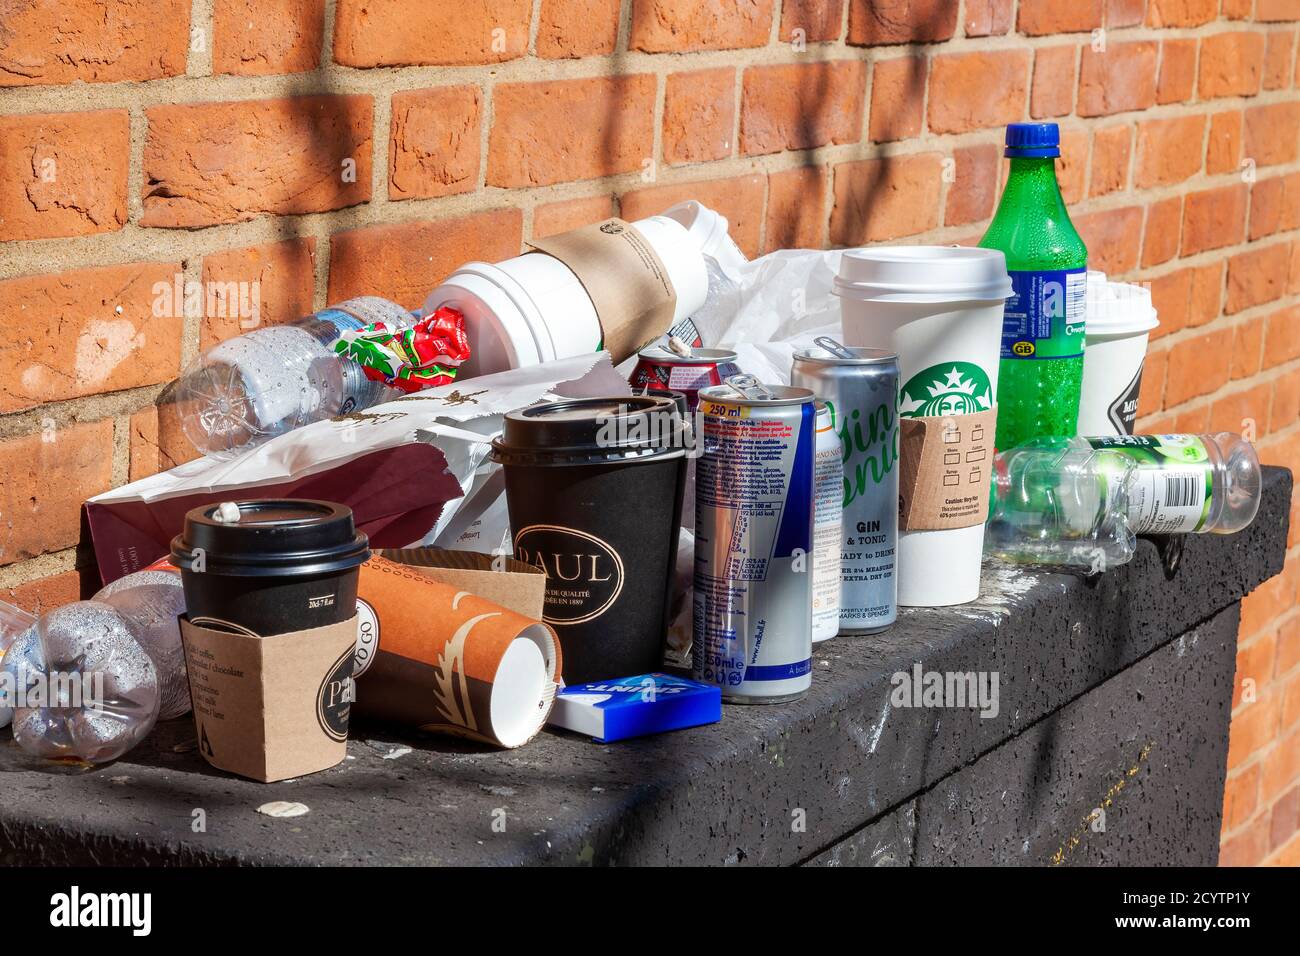 London, UK, 1. April 2012 : Müllabfuhr von Plastikflaschen und -Bechern zusammen mit Papierverpackungen mit Tüten und Blechdosen, die als sorgloser Garbag hinterlassen wurden Stockfoto